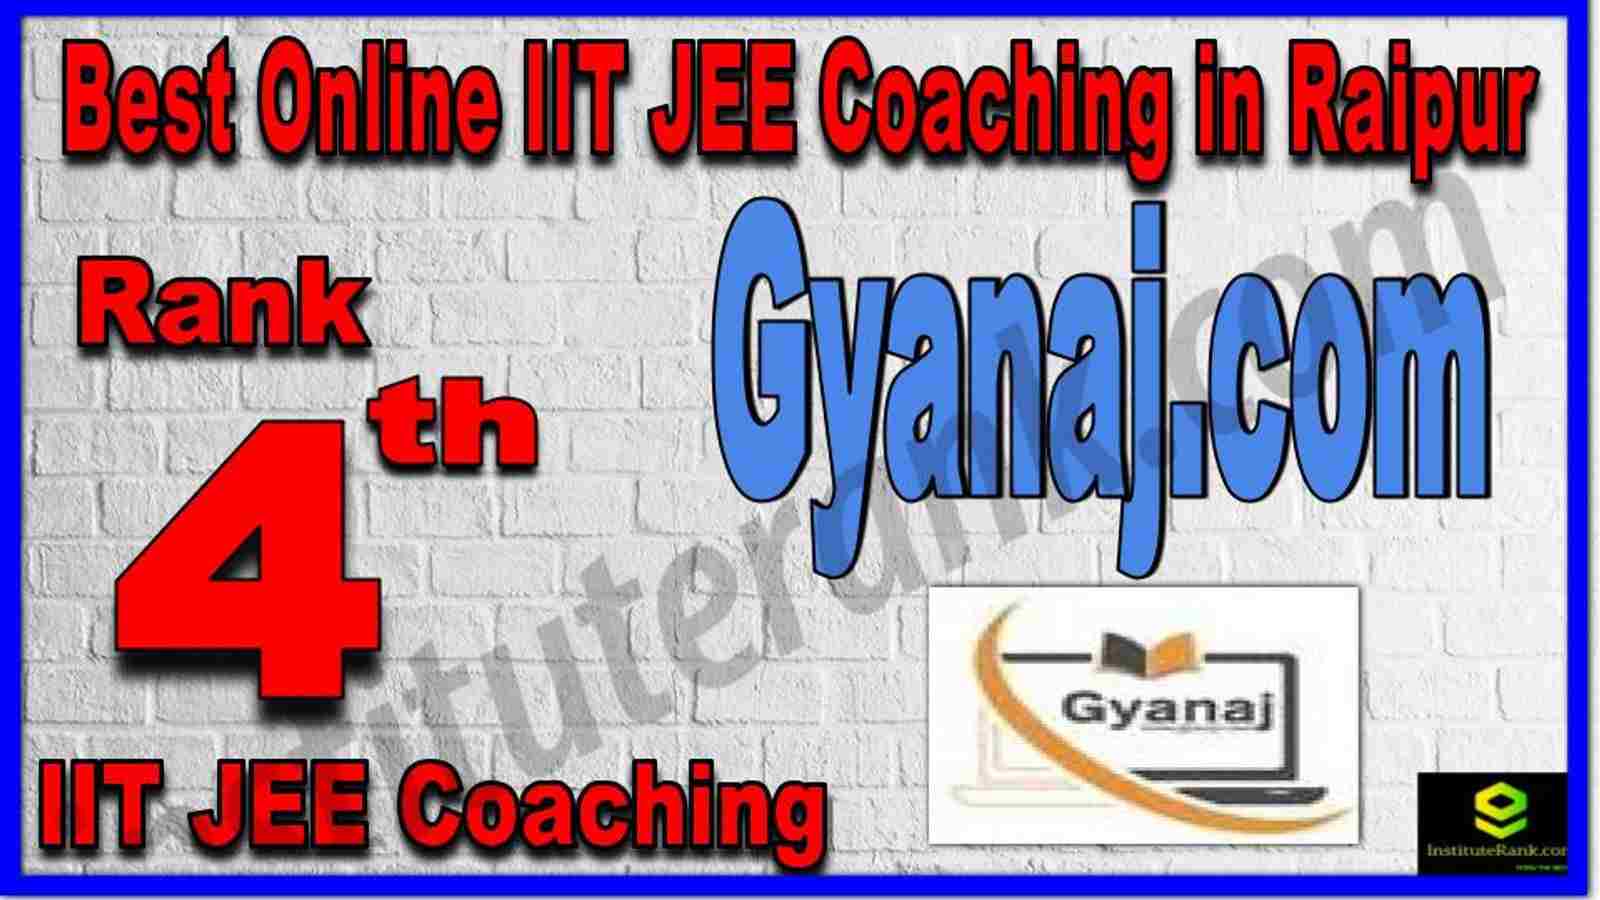 Rank 4th Best Online IIT JEE Coaching in Raipur